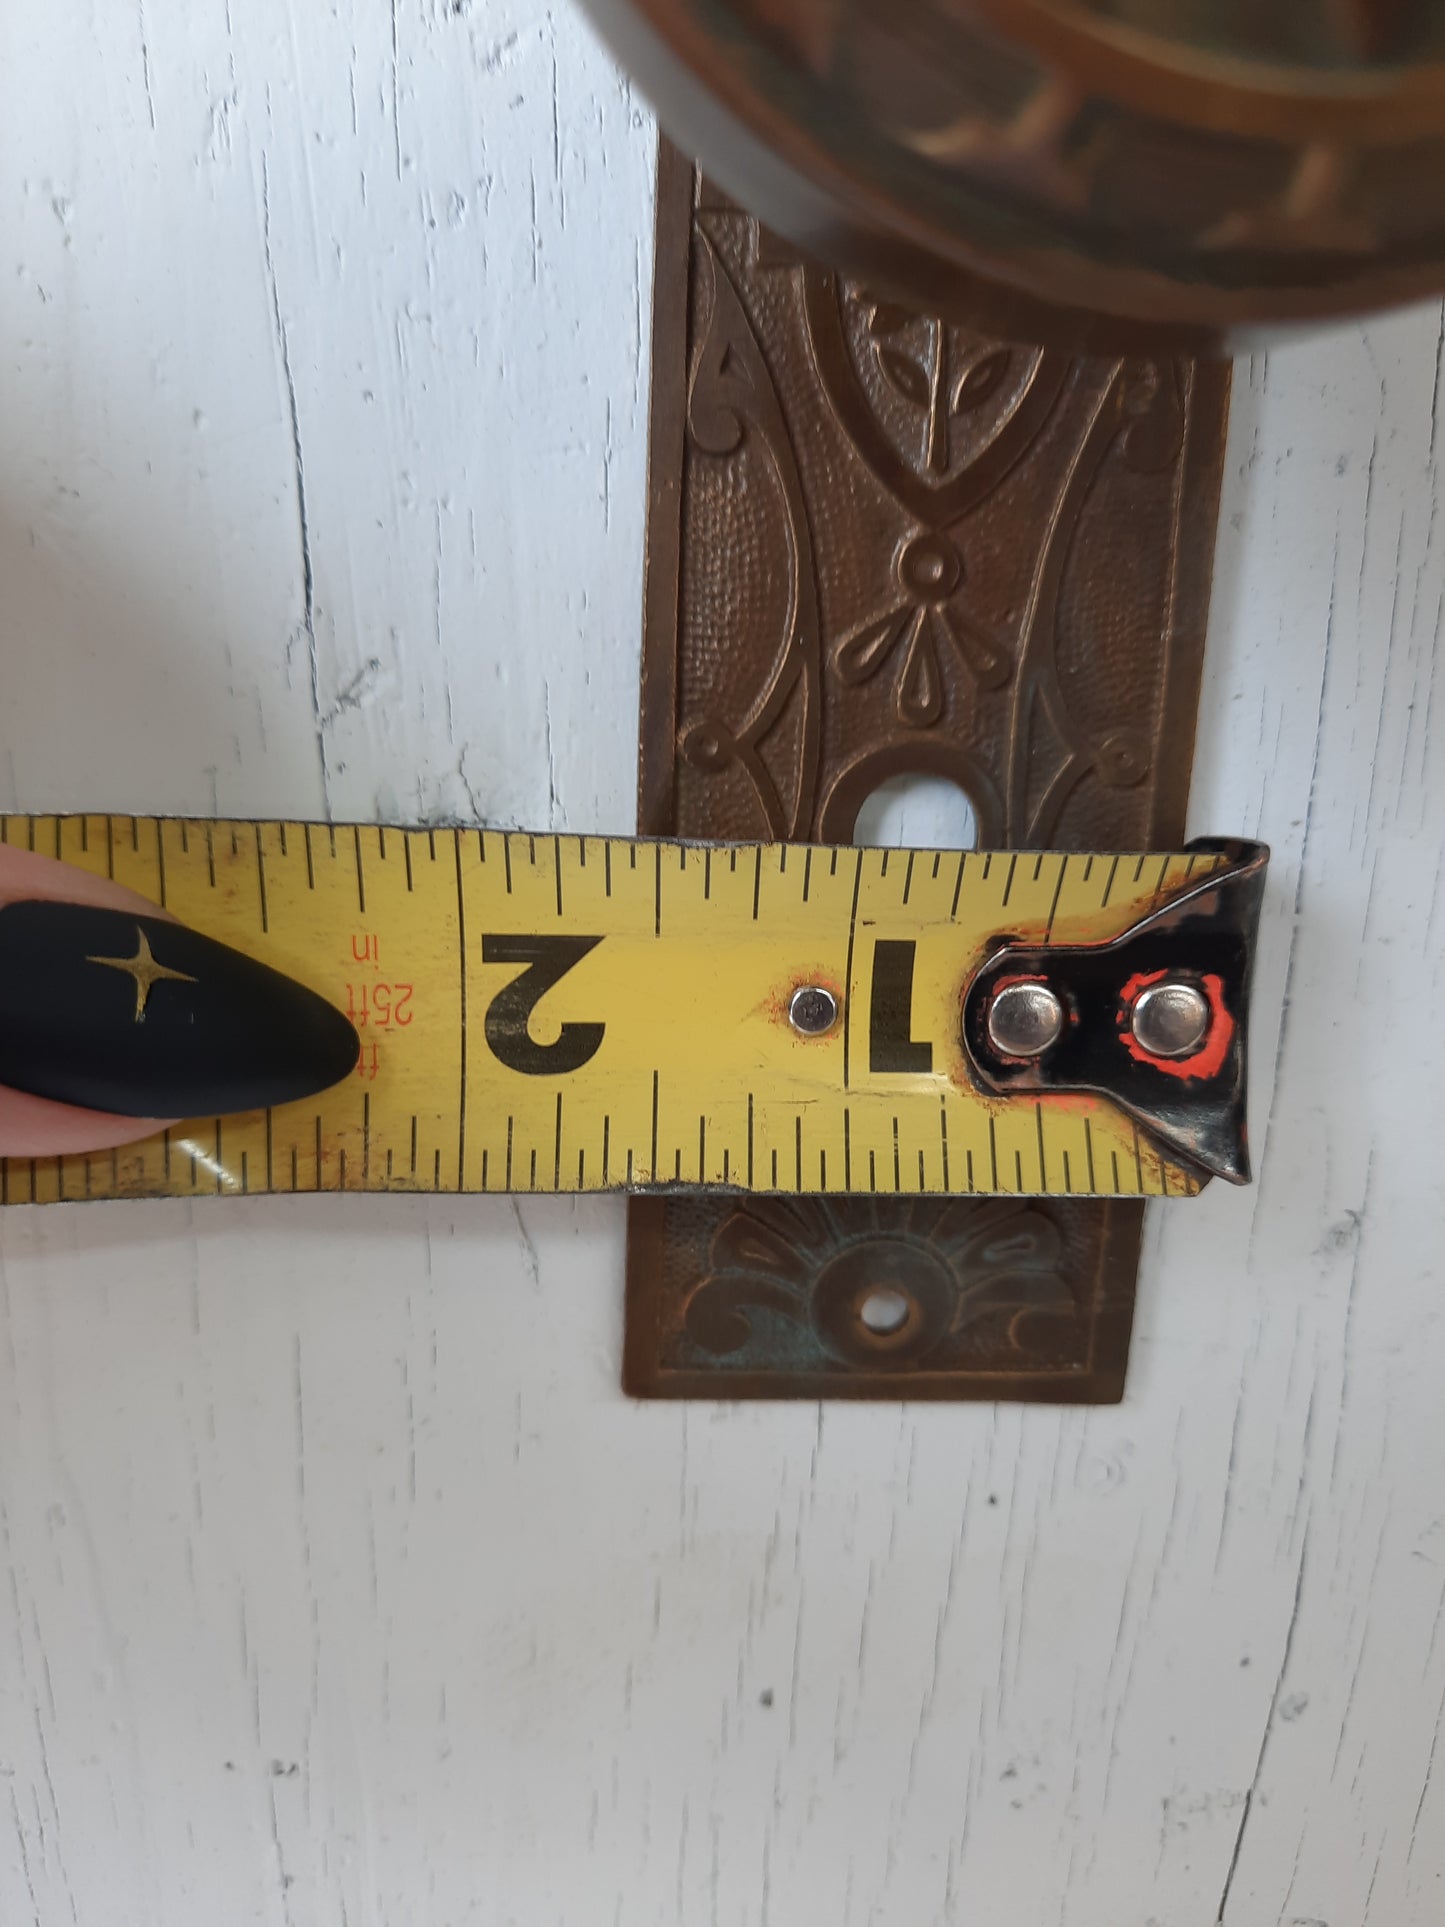 Antique Doorknob and Plates Victorian Door Hardware Set, Ornate Brass Doorknob and Plate Set 101901